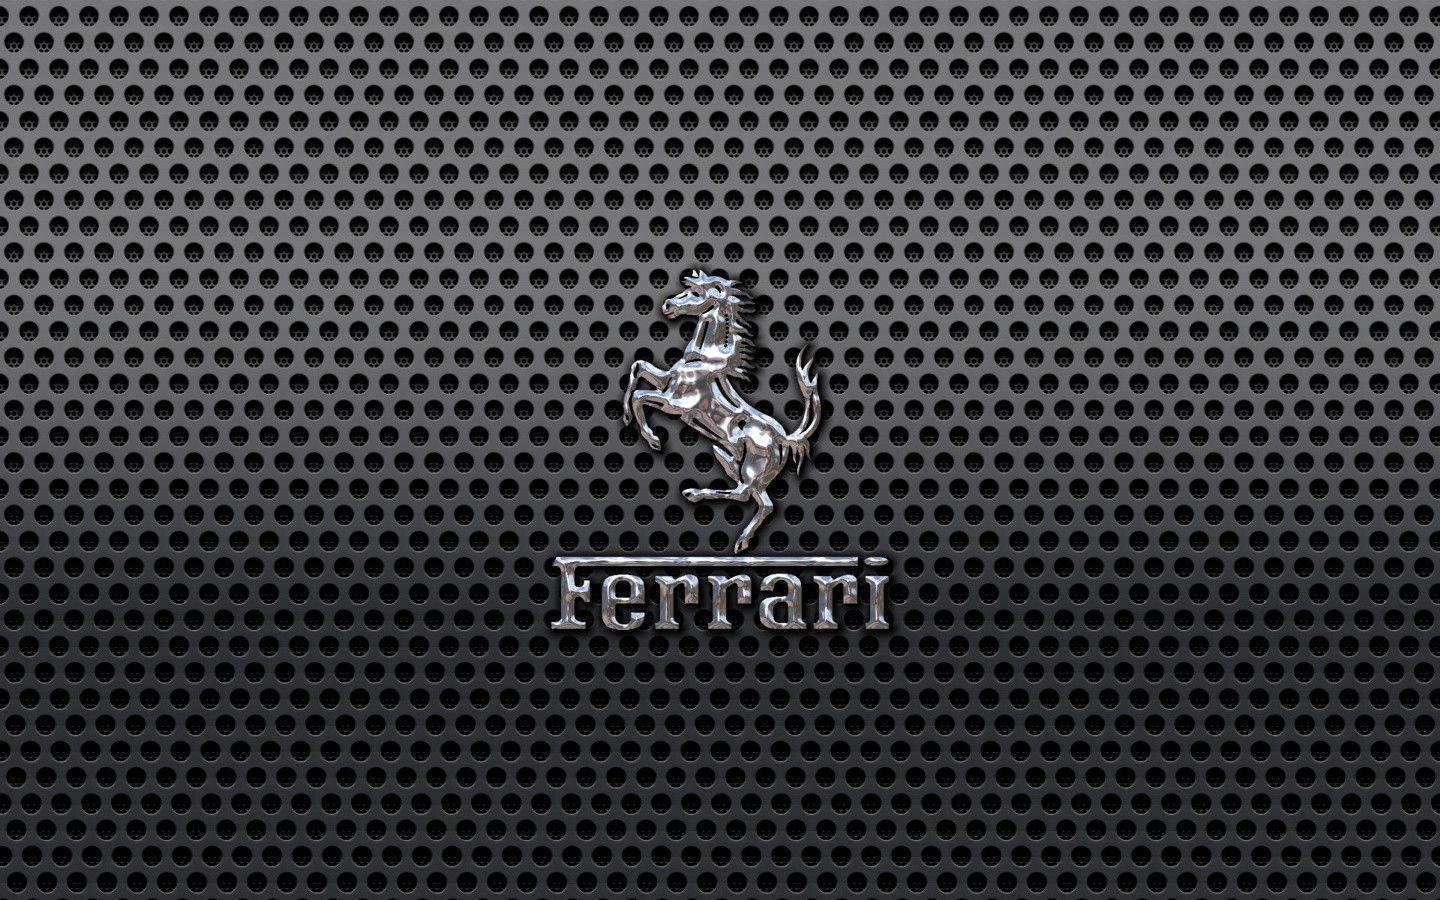 Metal Ferrari Logo Wallpaper For Desk Wallpaper